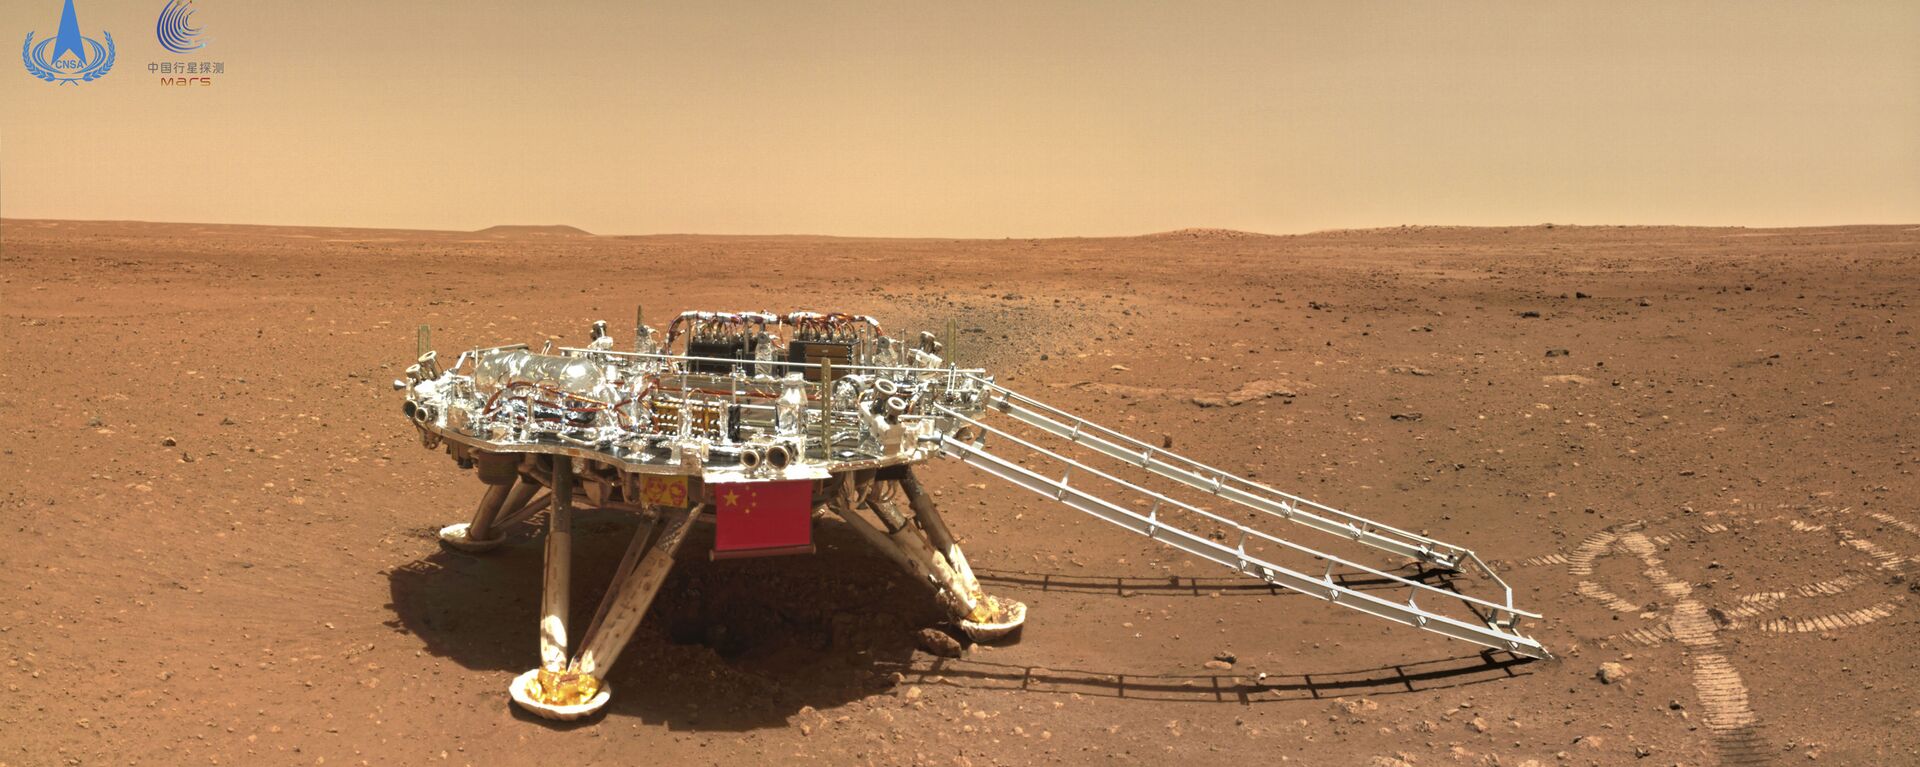 Kineski rover Džurong na površini Marsa. - Sputnik Srbija, 1920, 01.01.2022